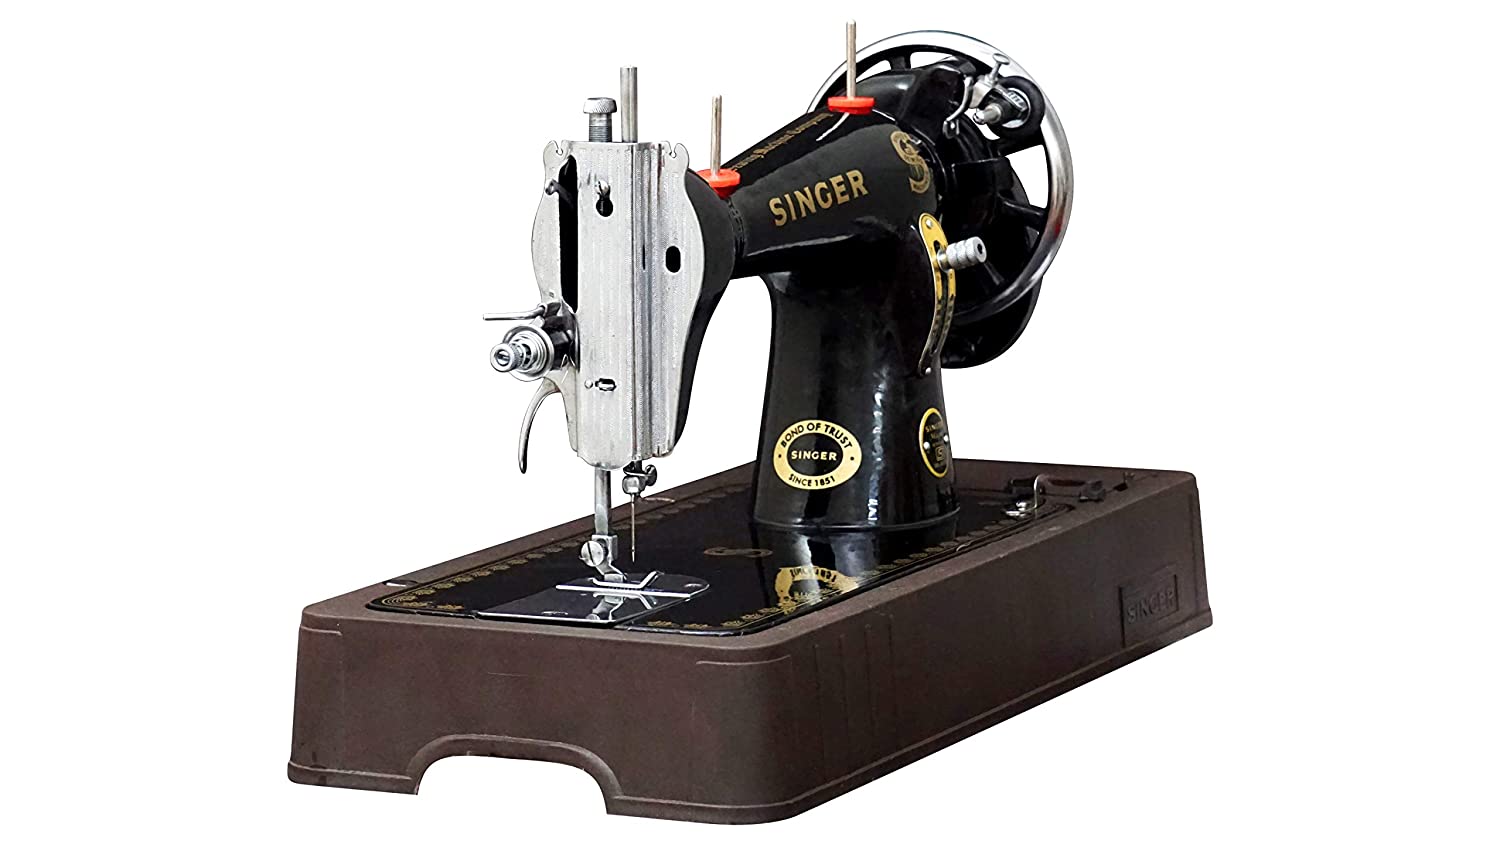 Singer sewing machine price